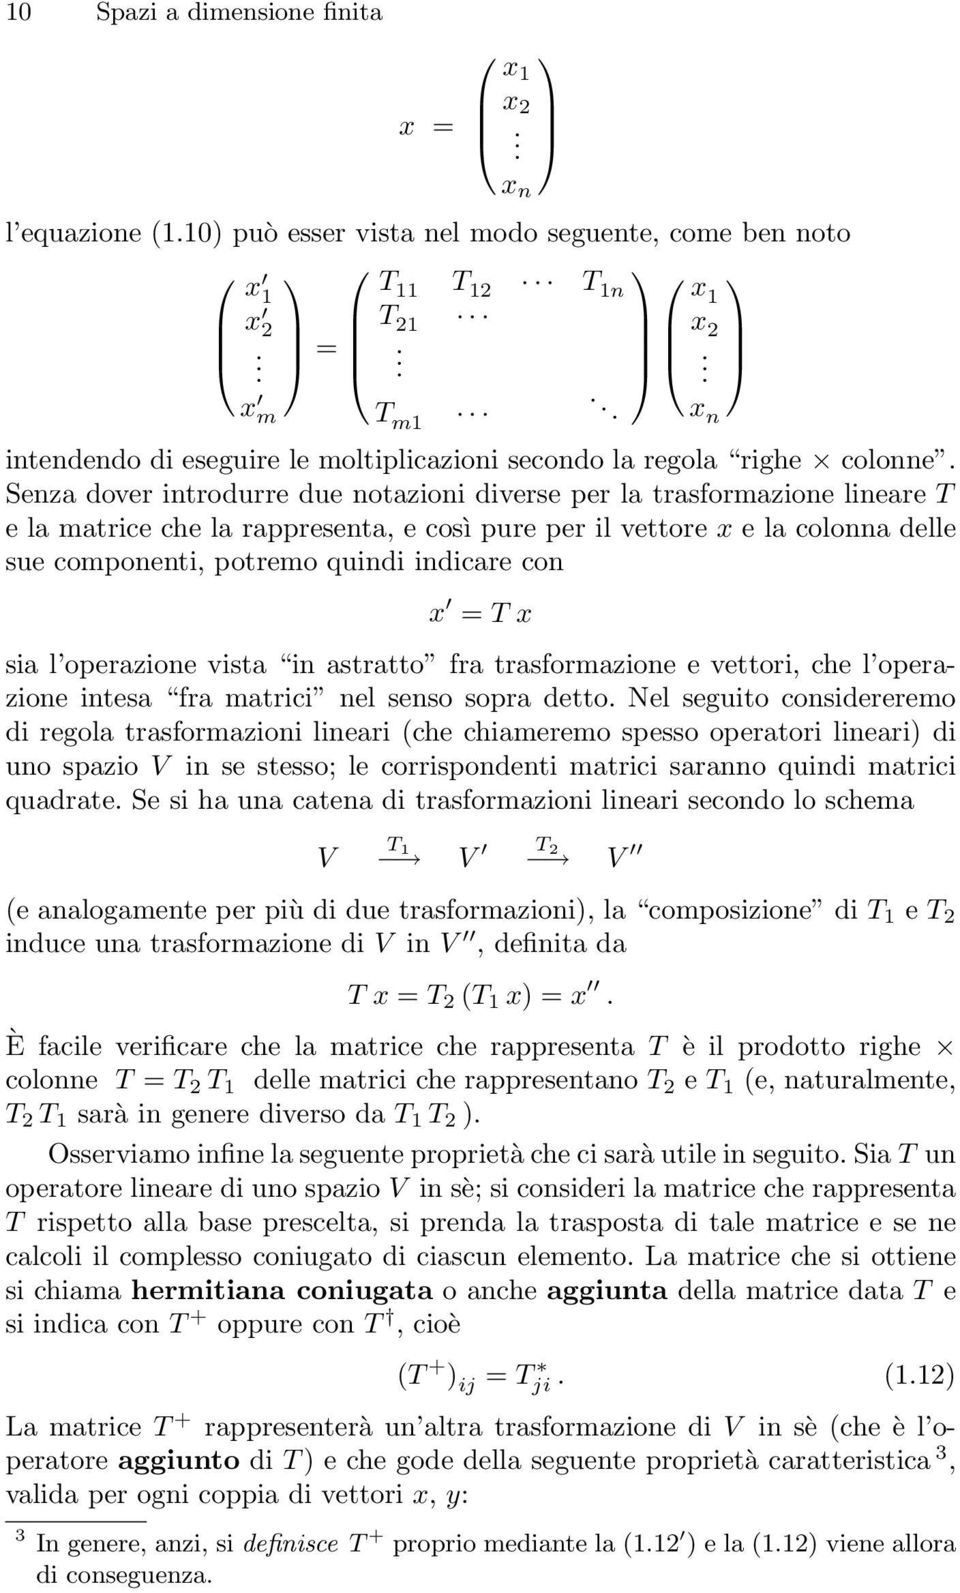 Senza dover introdurre due notazioni diverse per la trasformazione lineare T e la matrice che la rappresenta, e così pure per il vettore x e la colonna delle sue componenti, potremo quindi indicare